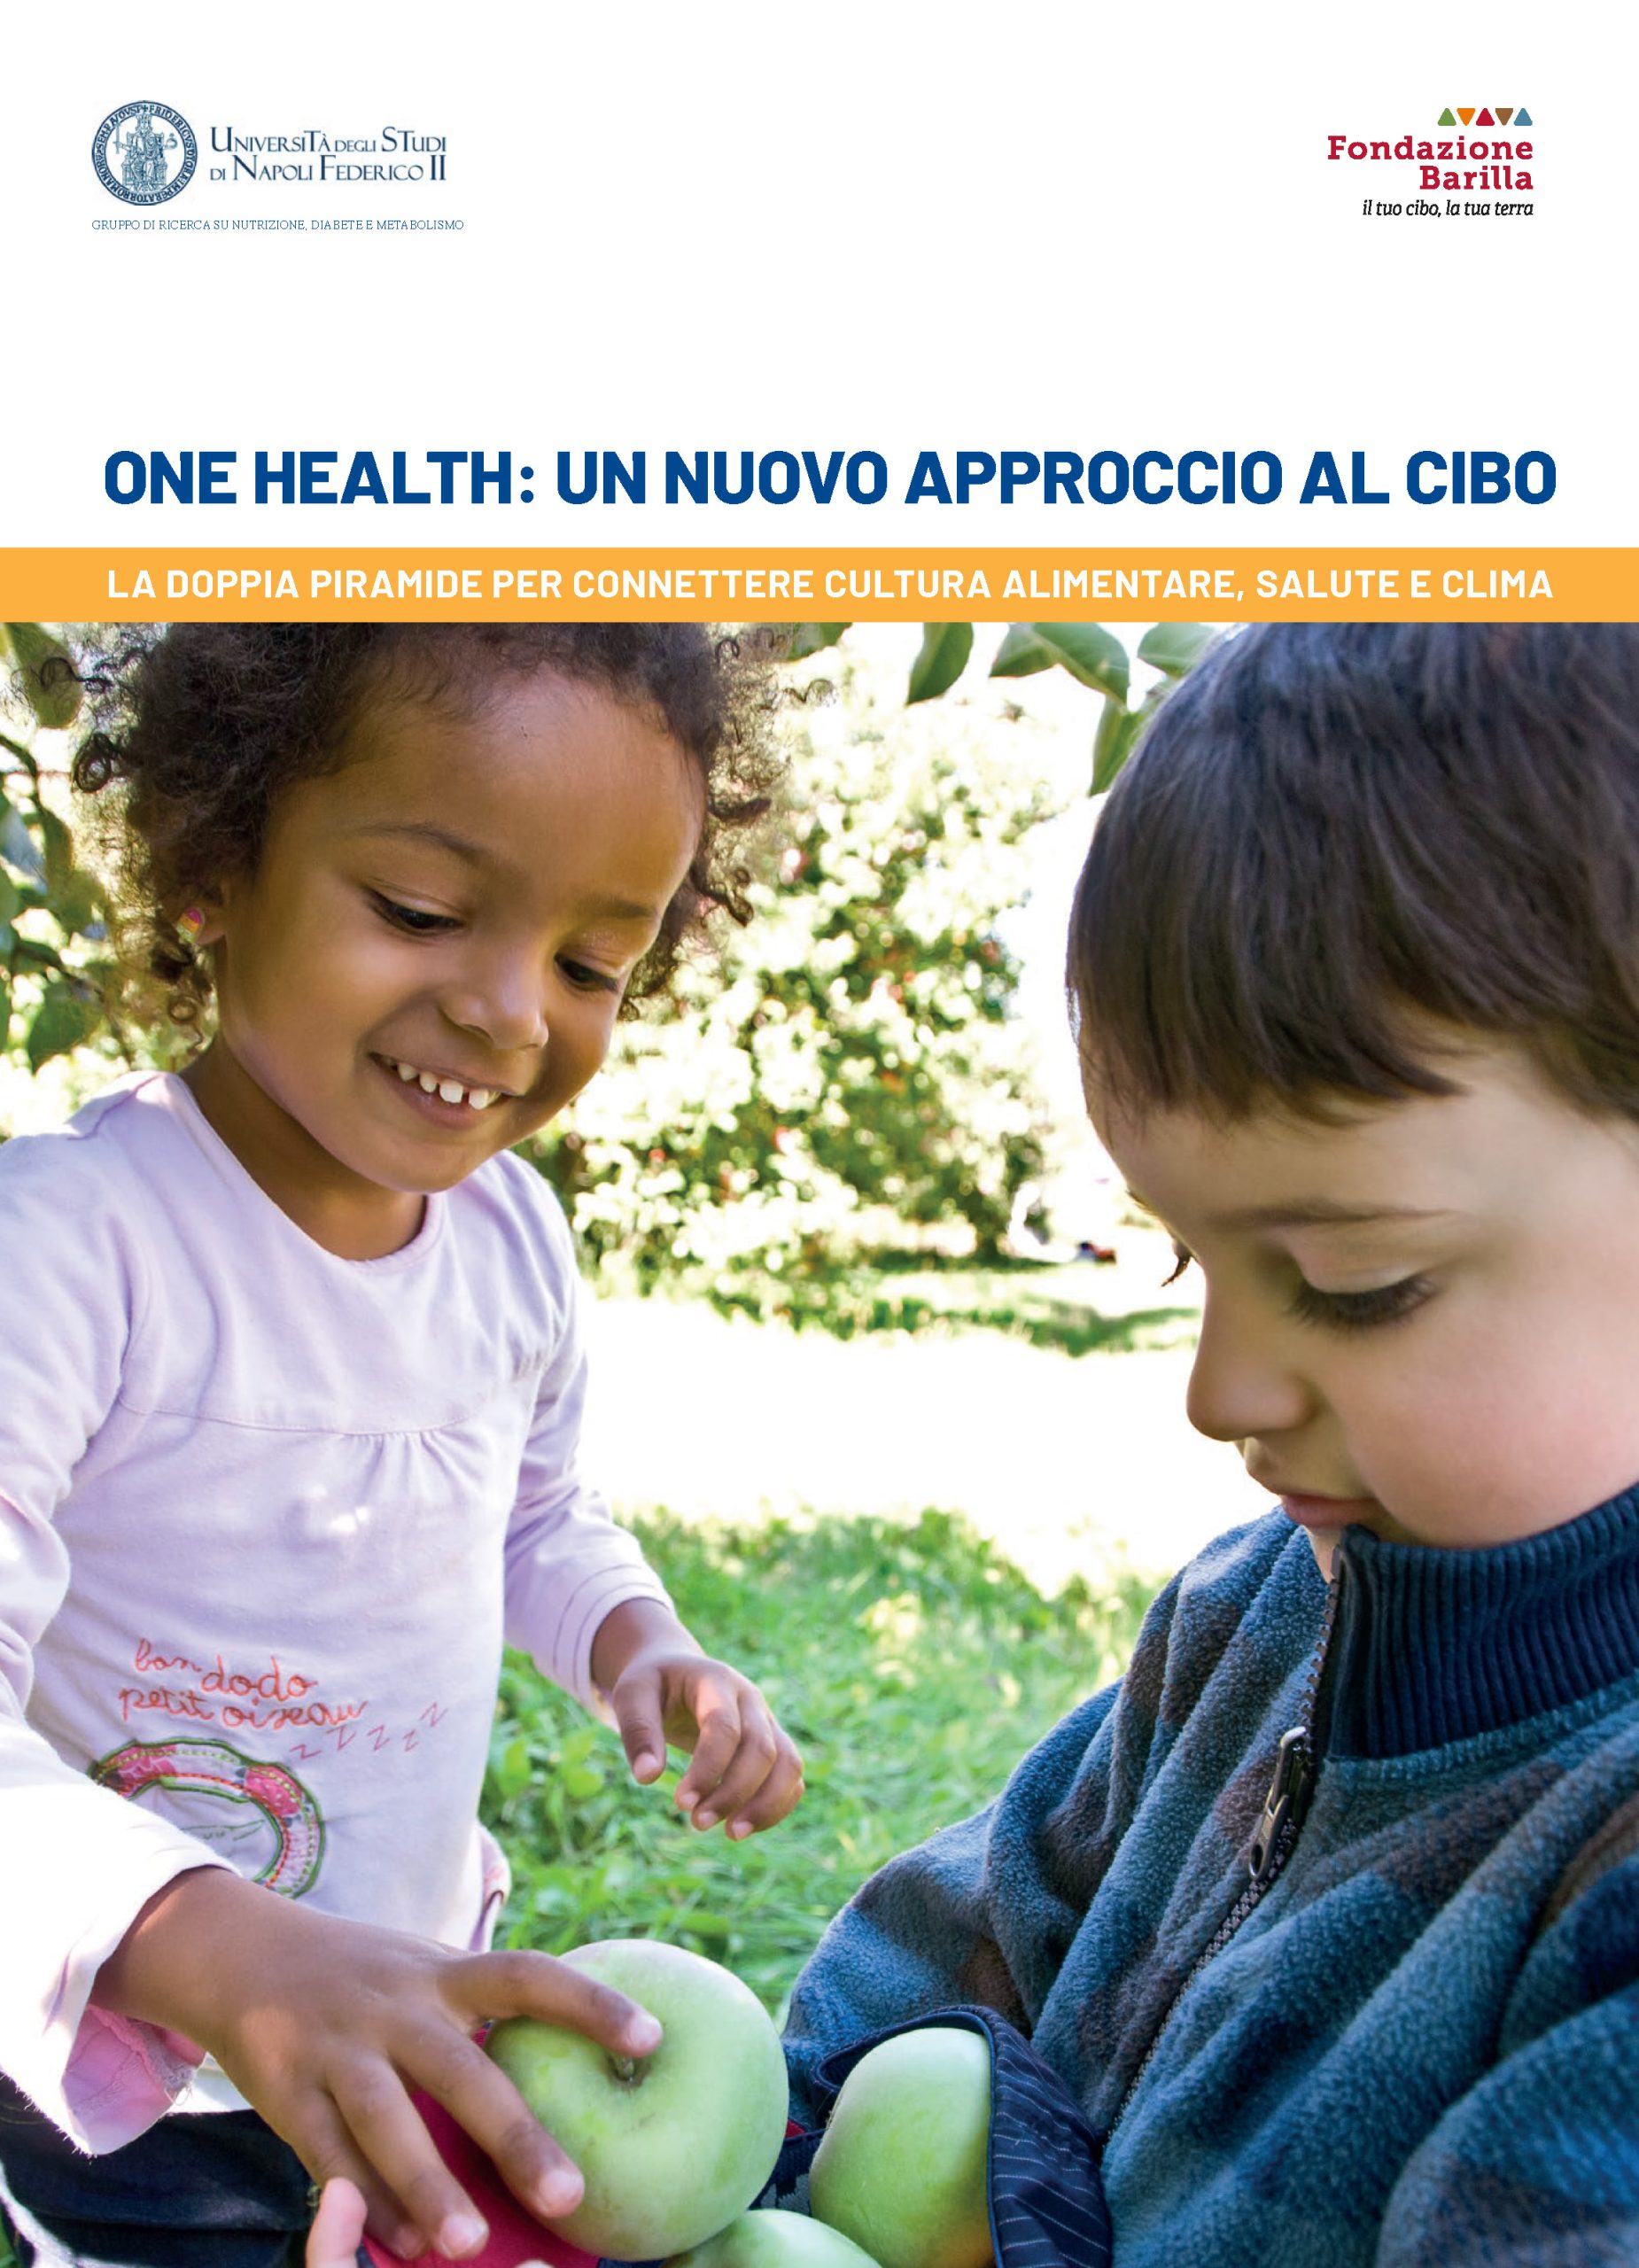 One Health: un nuovo approccio al cibo